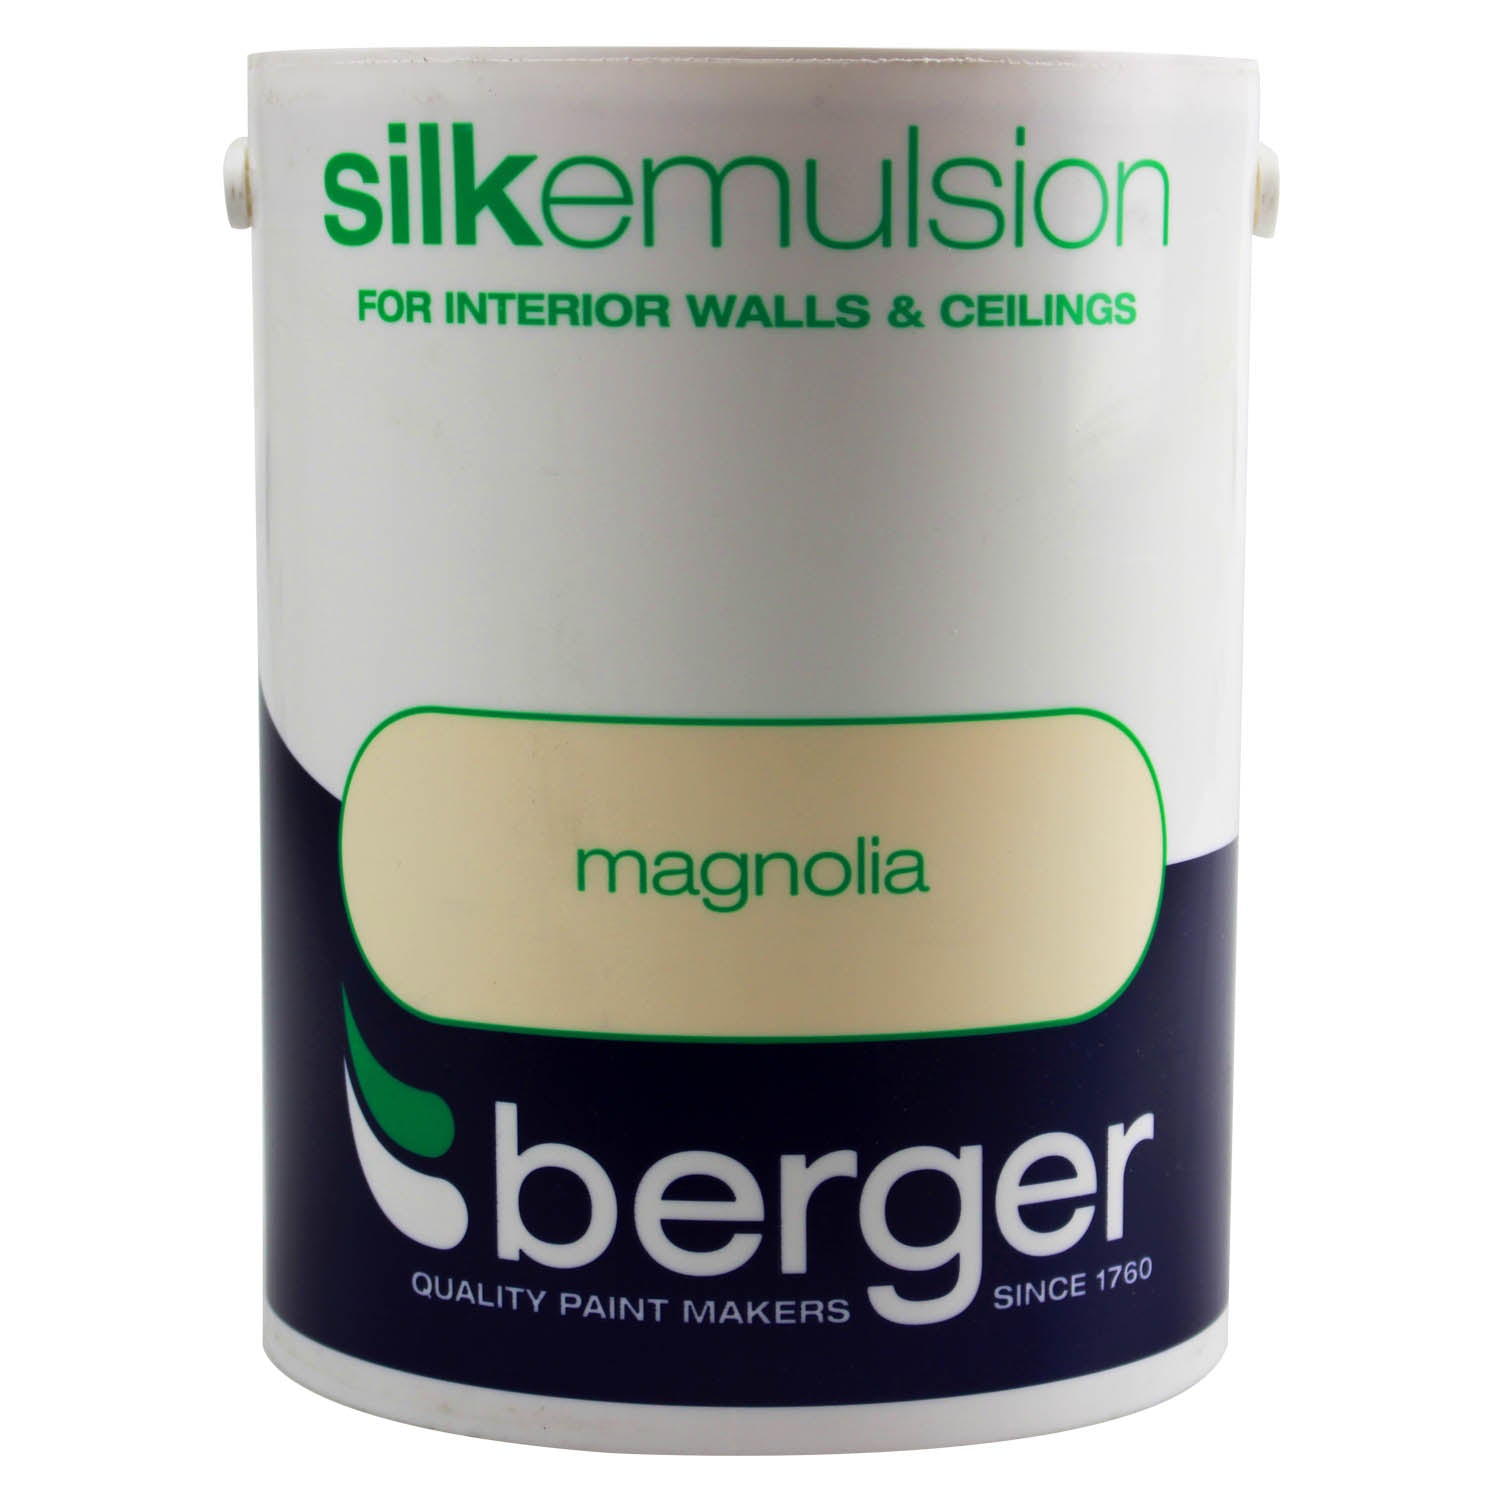 Berger 5 Litre Magnolia Silk Emulsion Paint